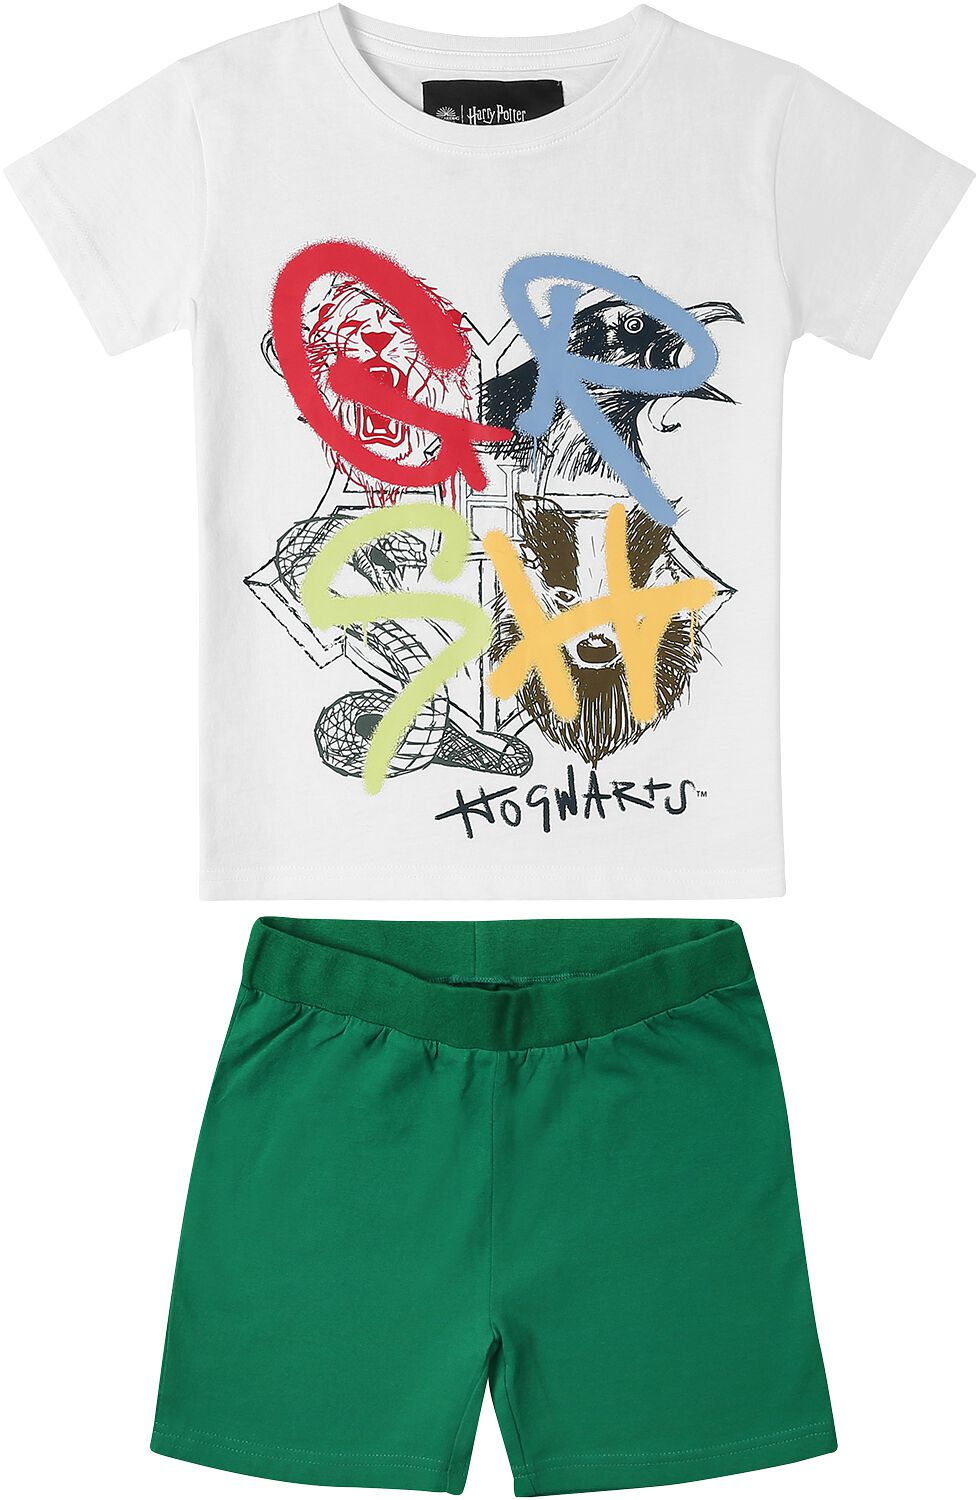 Harry Potter T-Shirt für Kinder - Häuser - für Mädchen & Jungen - weiß/grün  - EMP exklusives Merchandise!